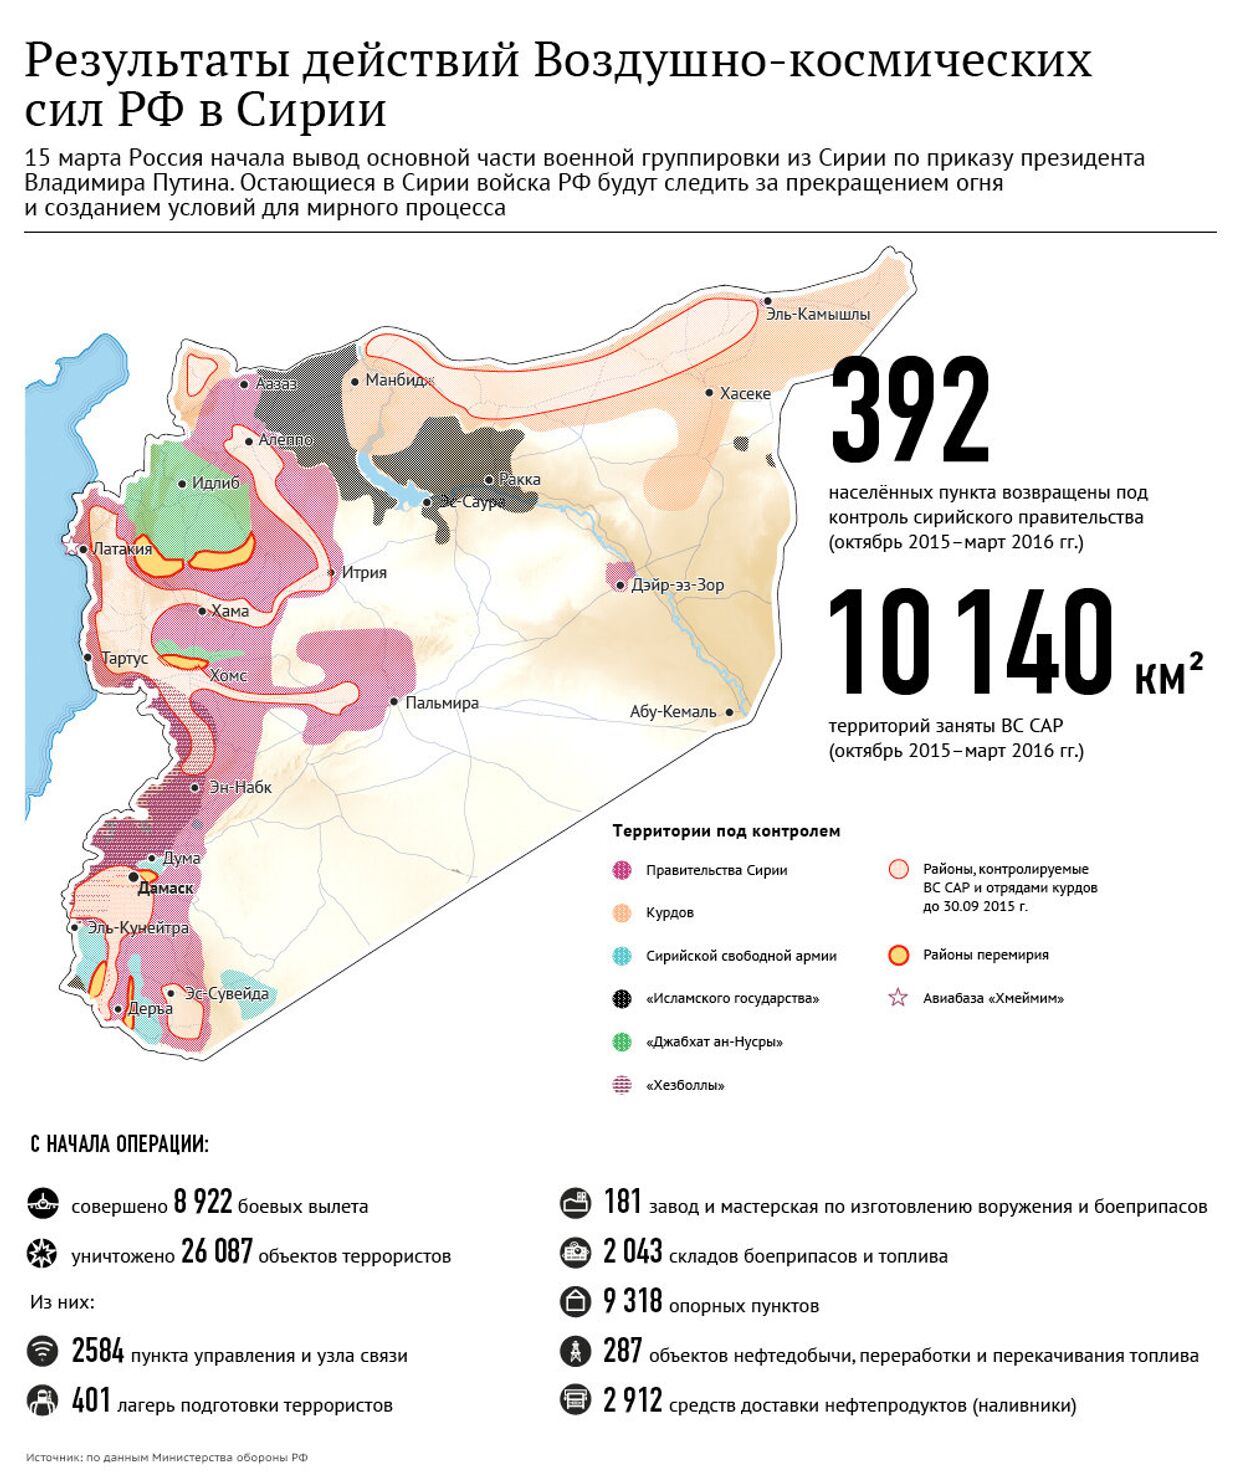 Результаты действий Воздушно-космических сил России в Сирии